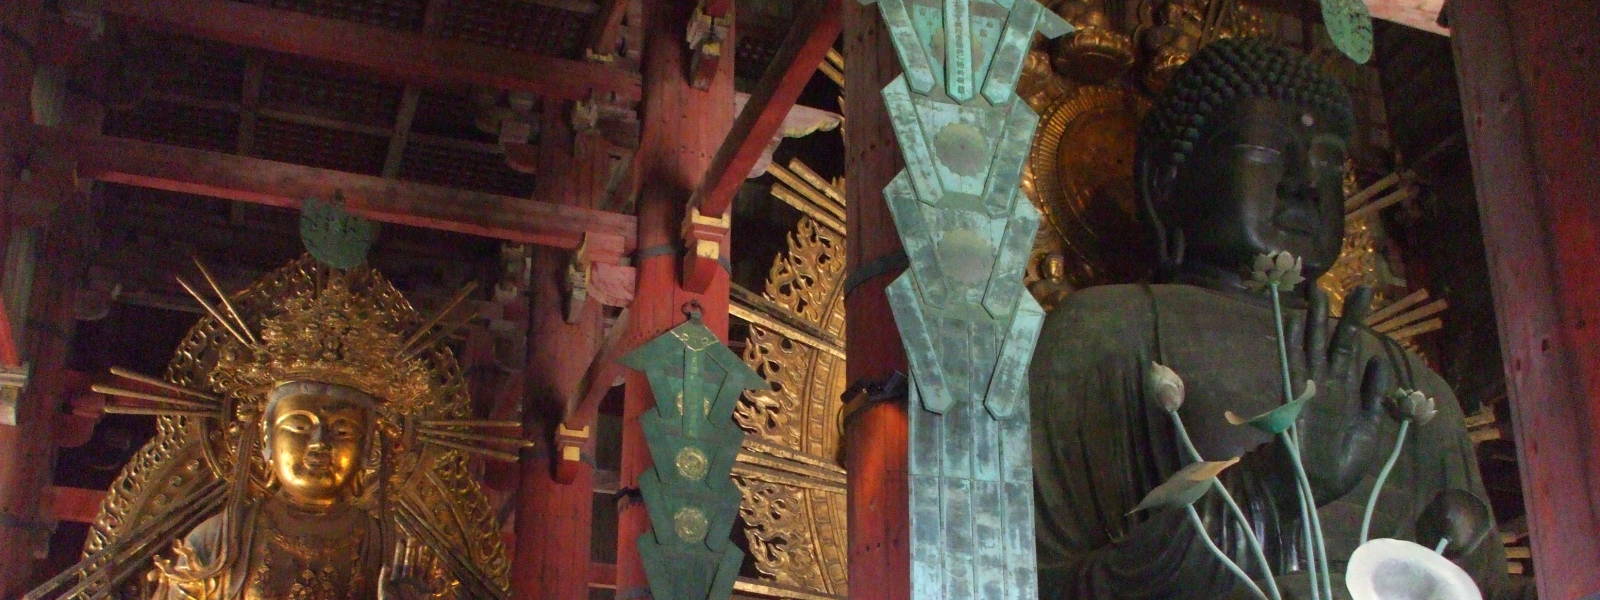 Bodhisattva at the Great Buddha at Tōdai-ji in Nara, Japan